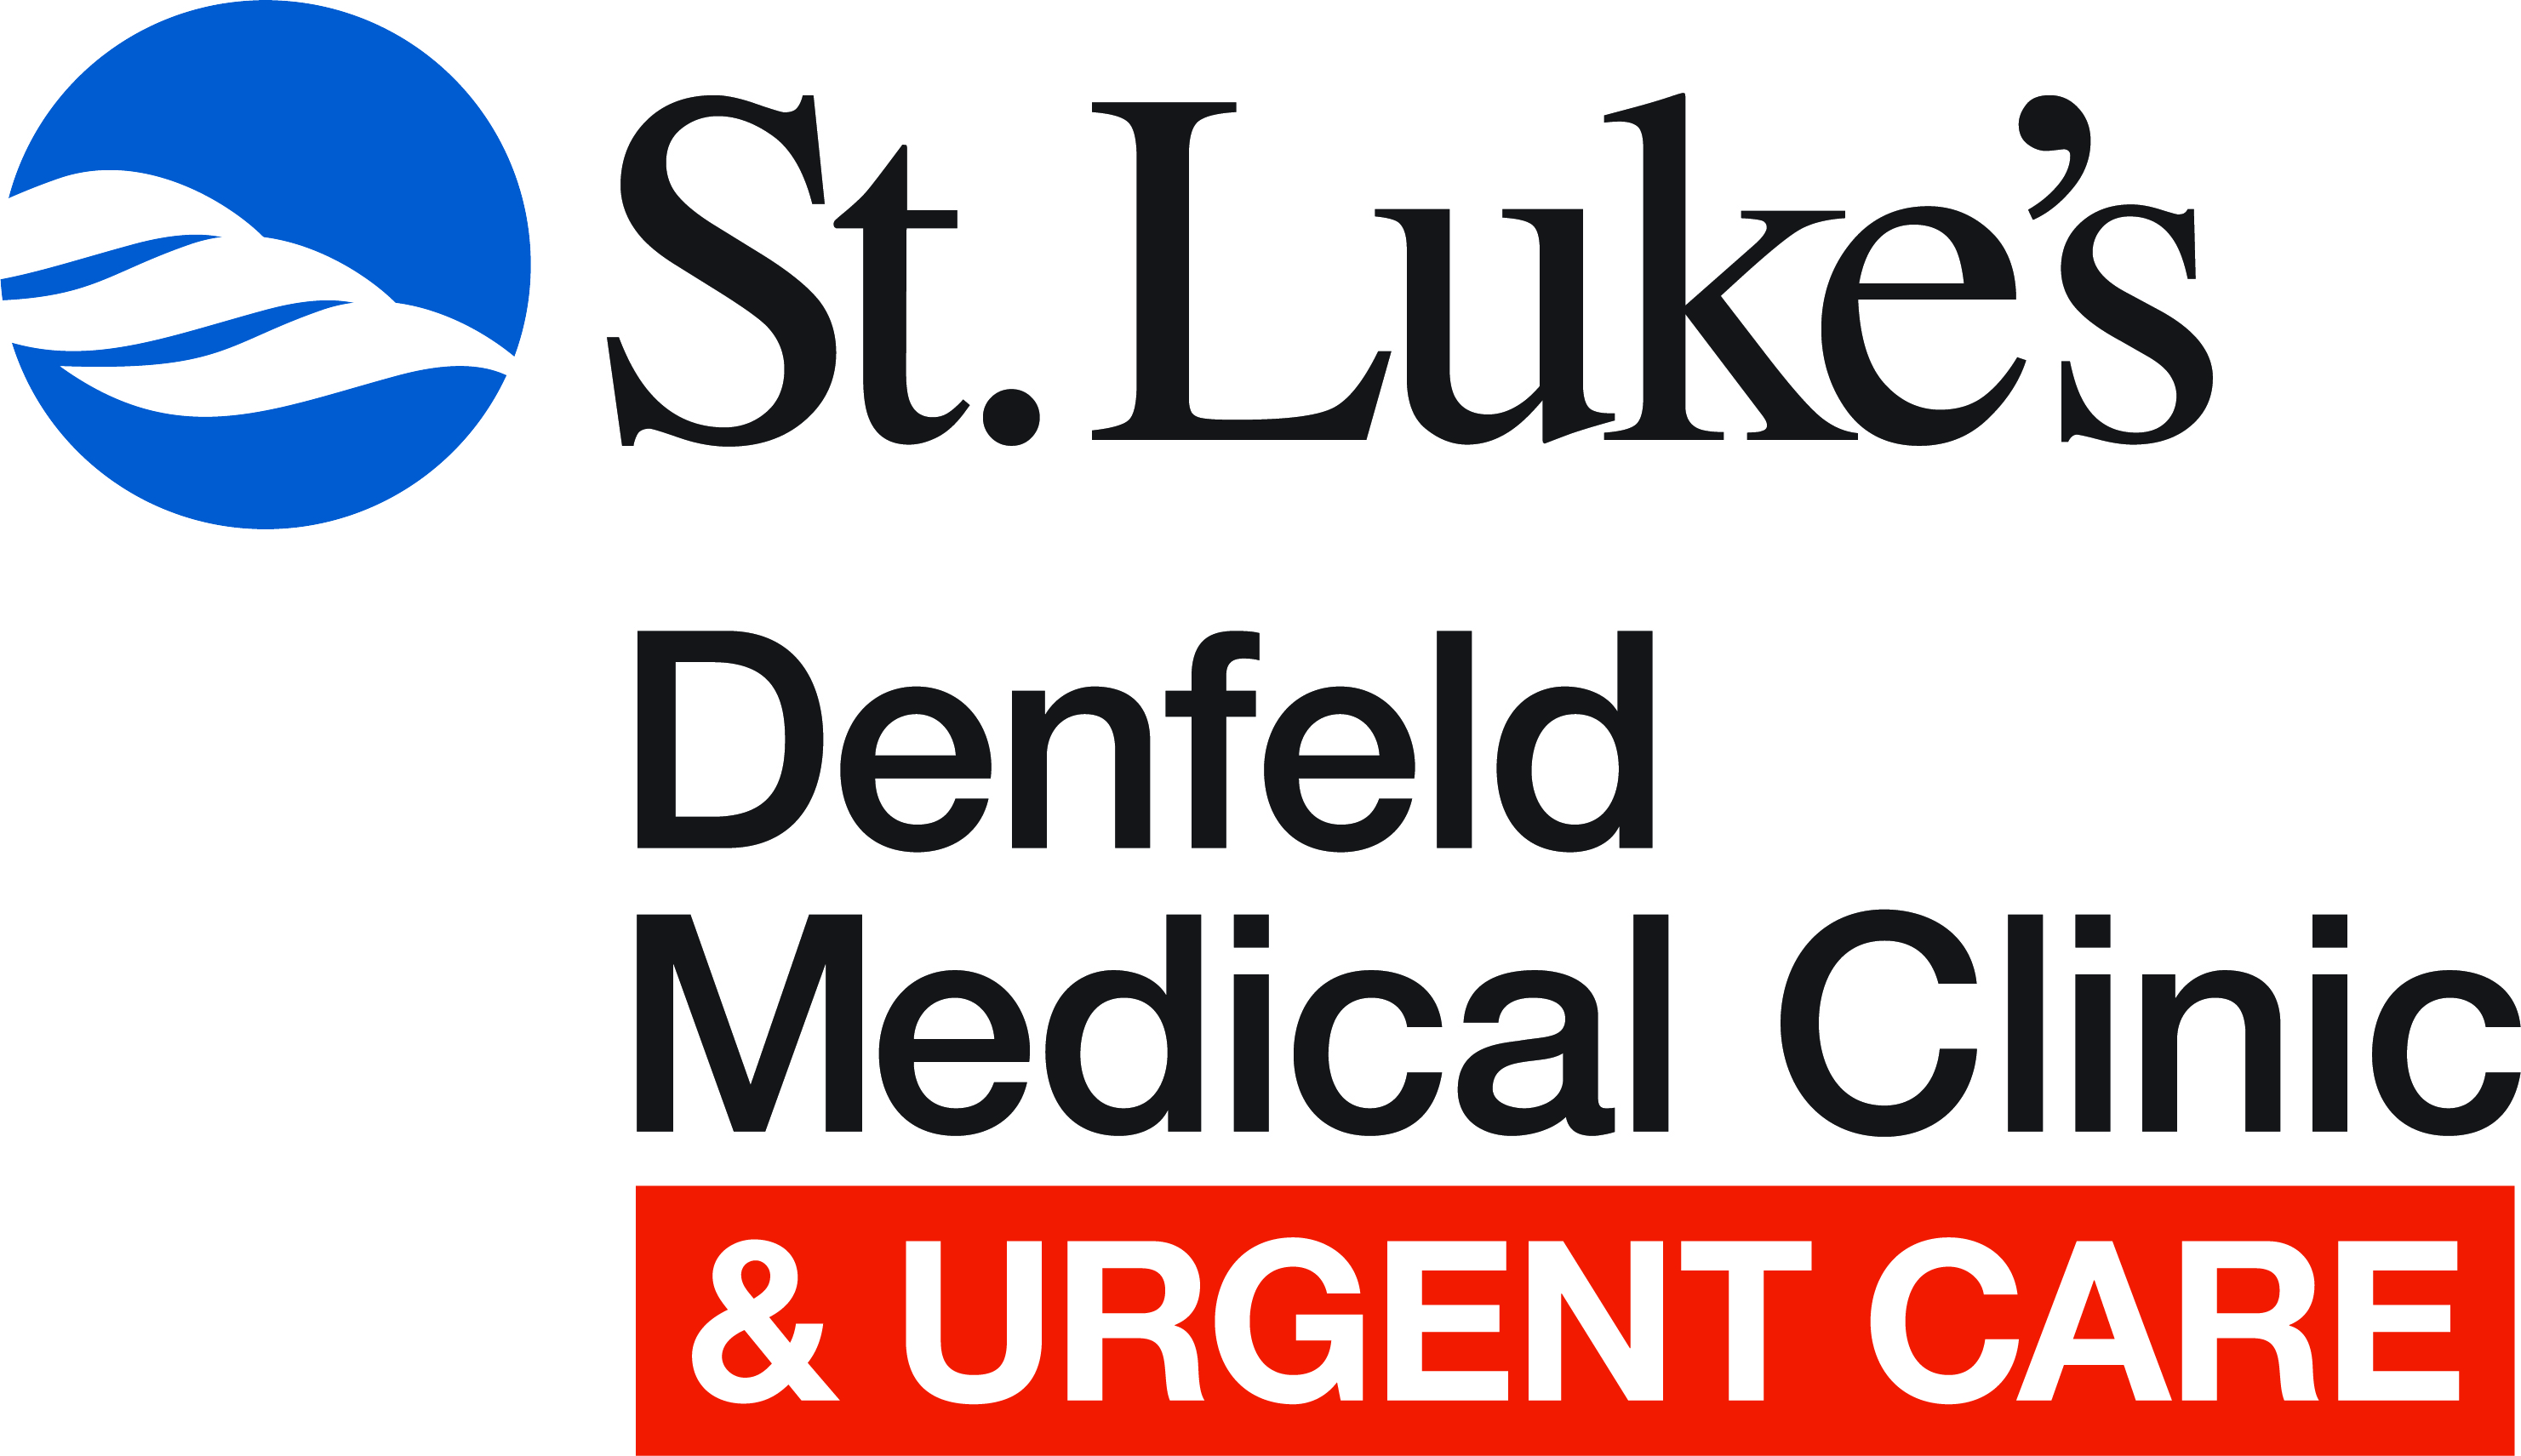 St. Luke's Denfeld Medical Clinic logo